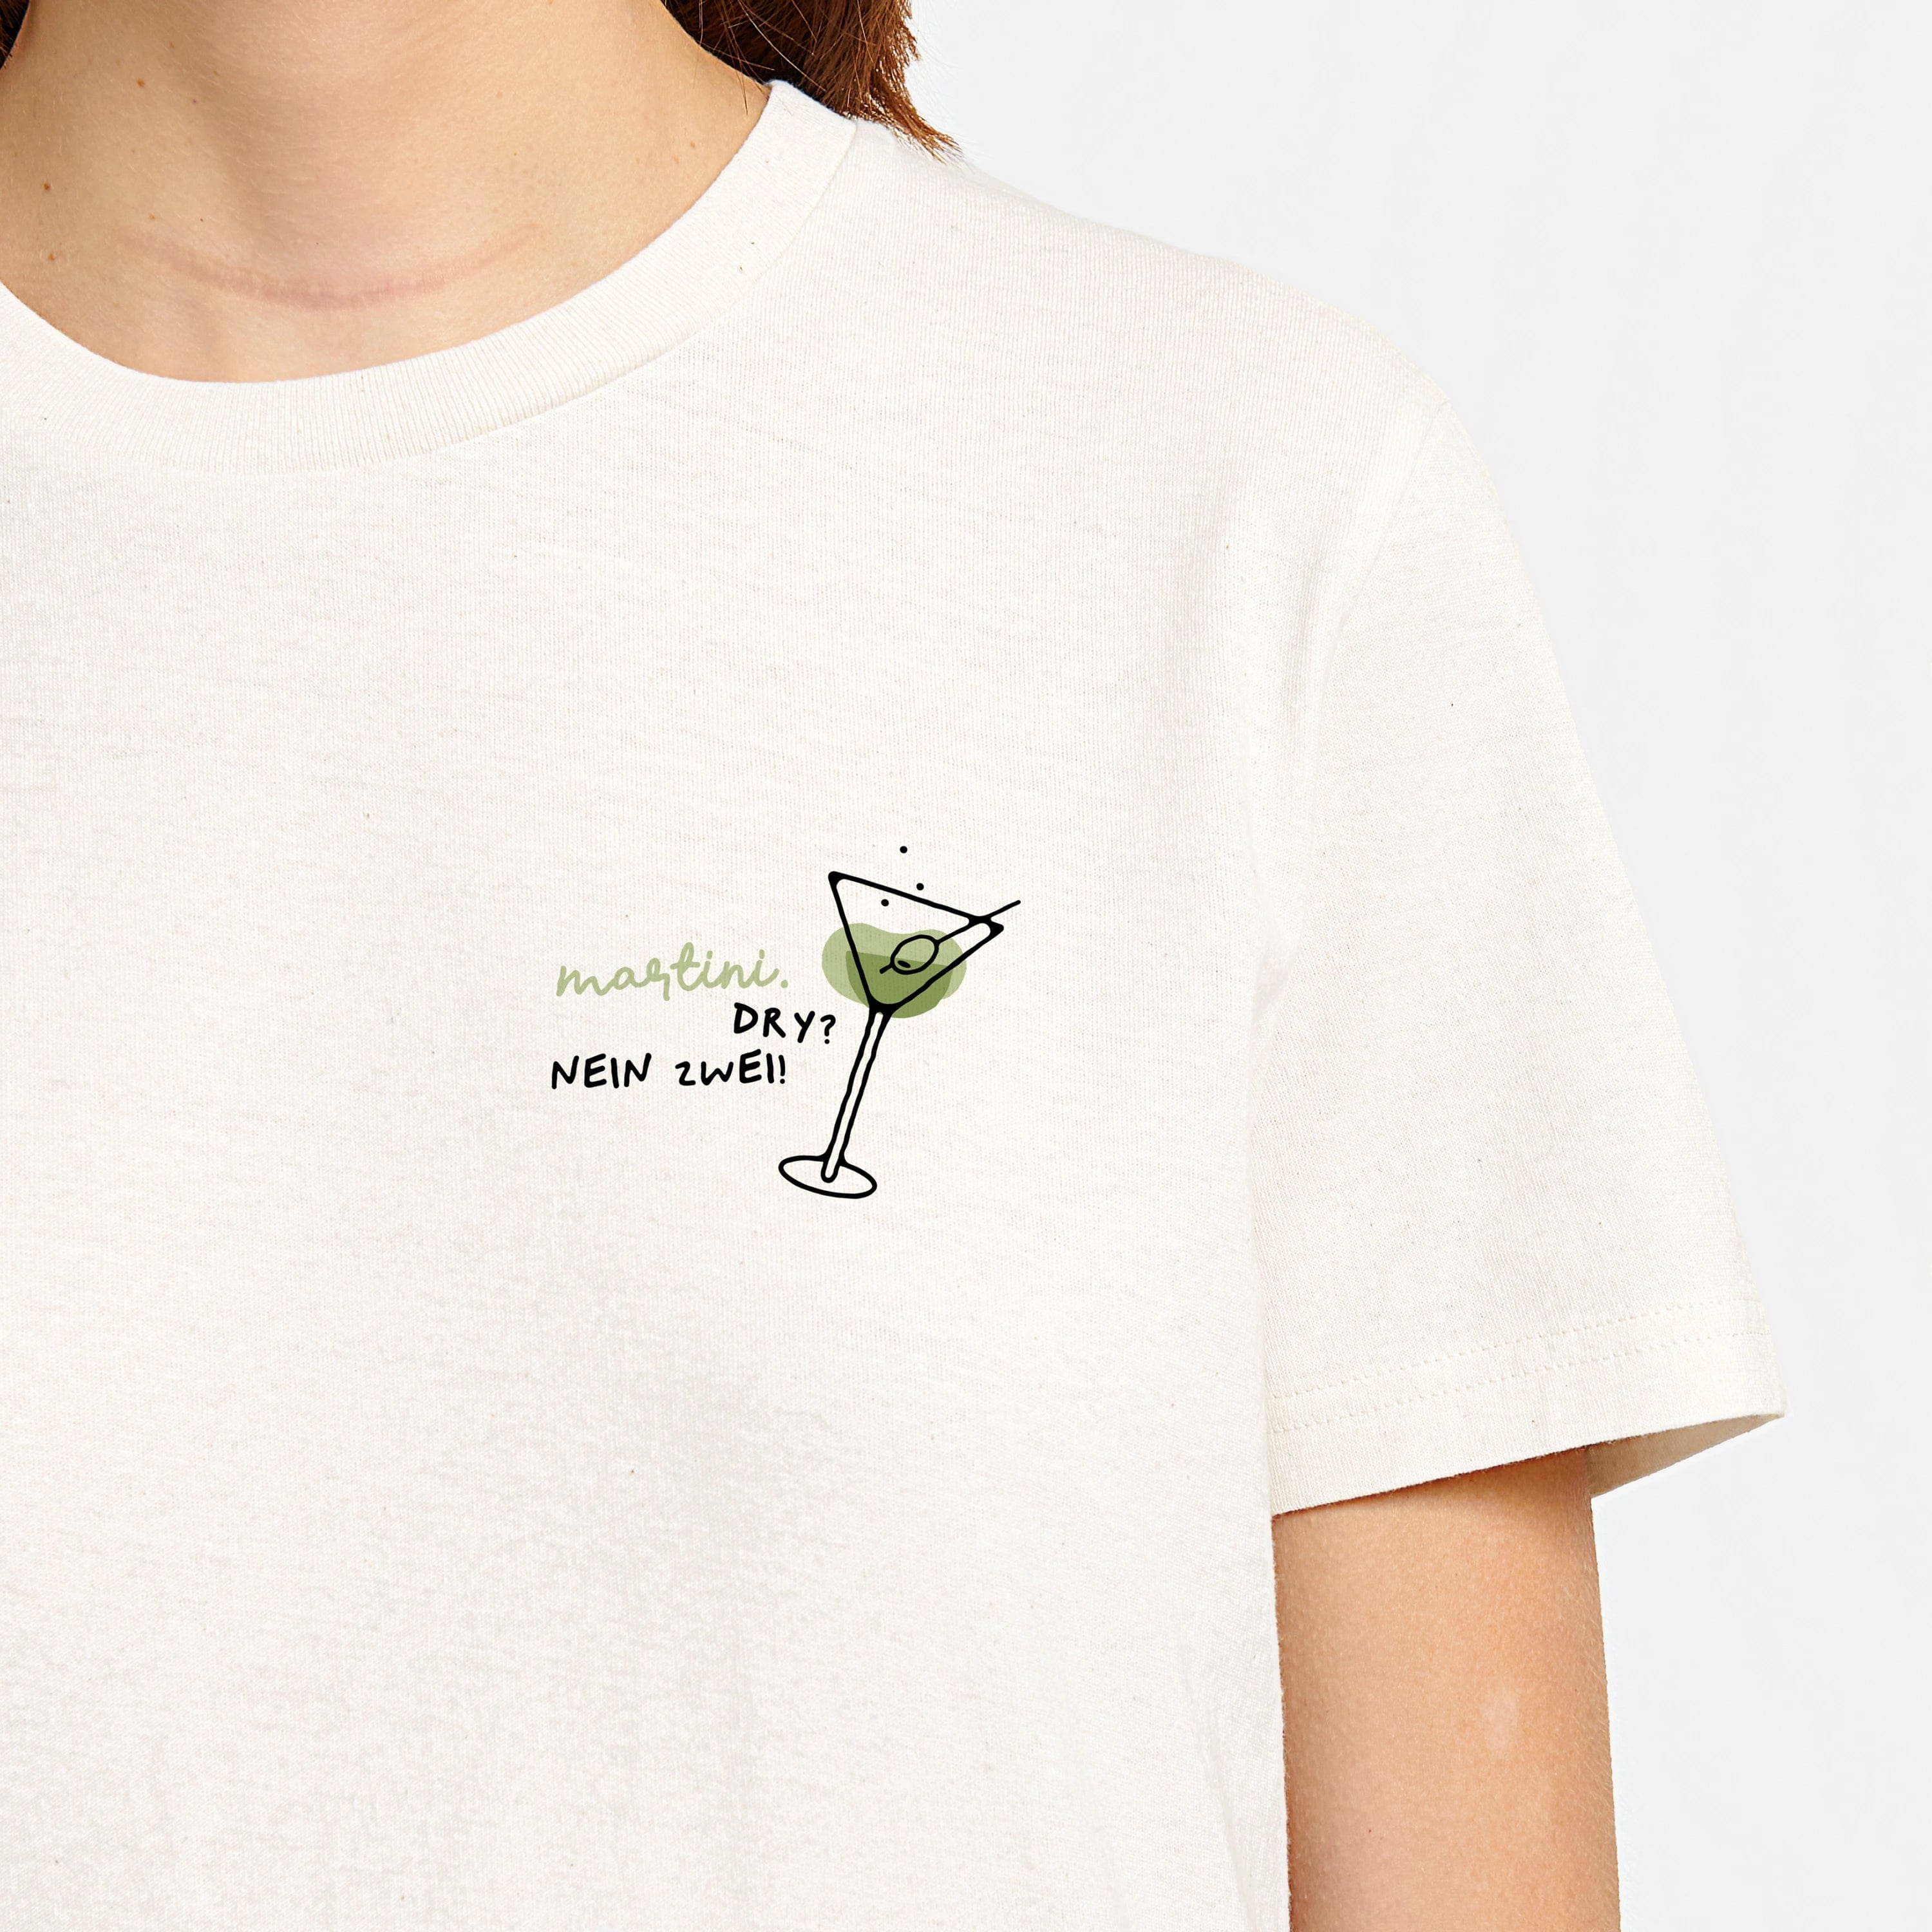 HEITER & LÄSSIG T-Shirt "Martini Dry" S / RE-weiß - aus nachhaltiger und fairer Produktion